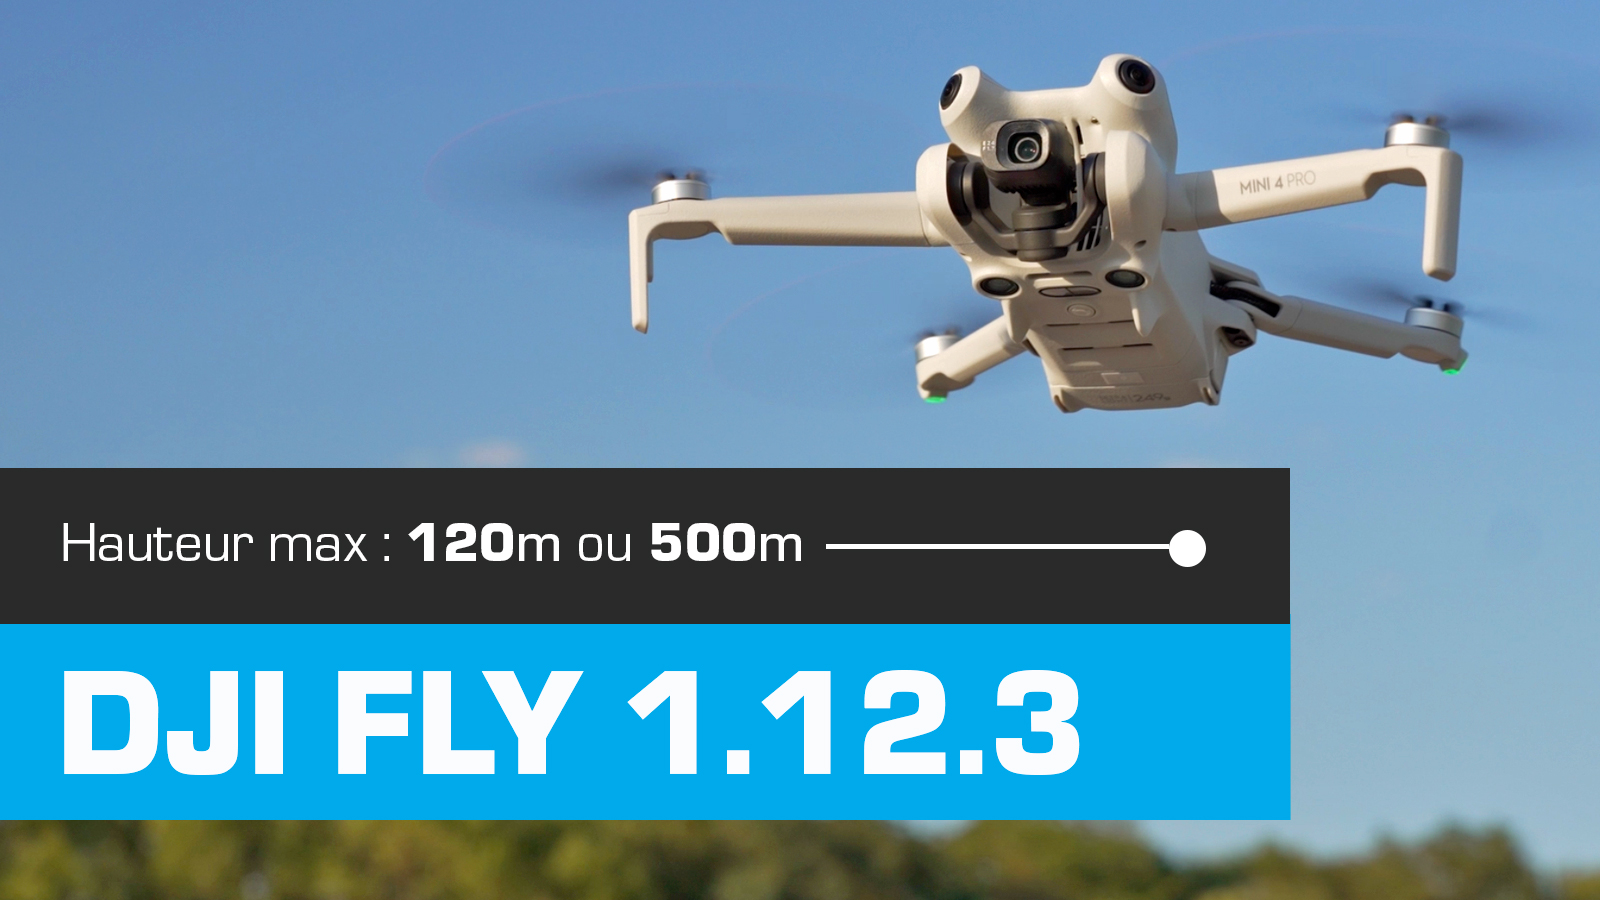 LIMITE DE HAUTEUR 120 mètres pour les drones de la gamme DJI